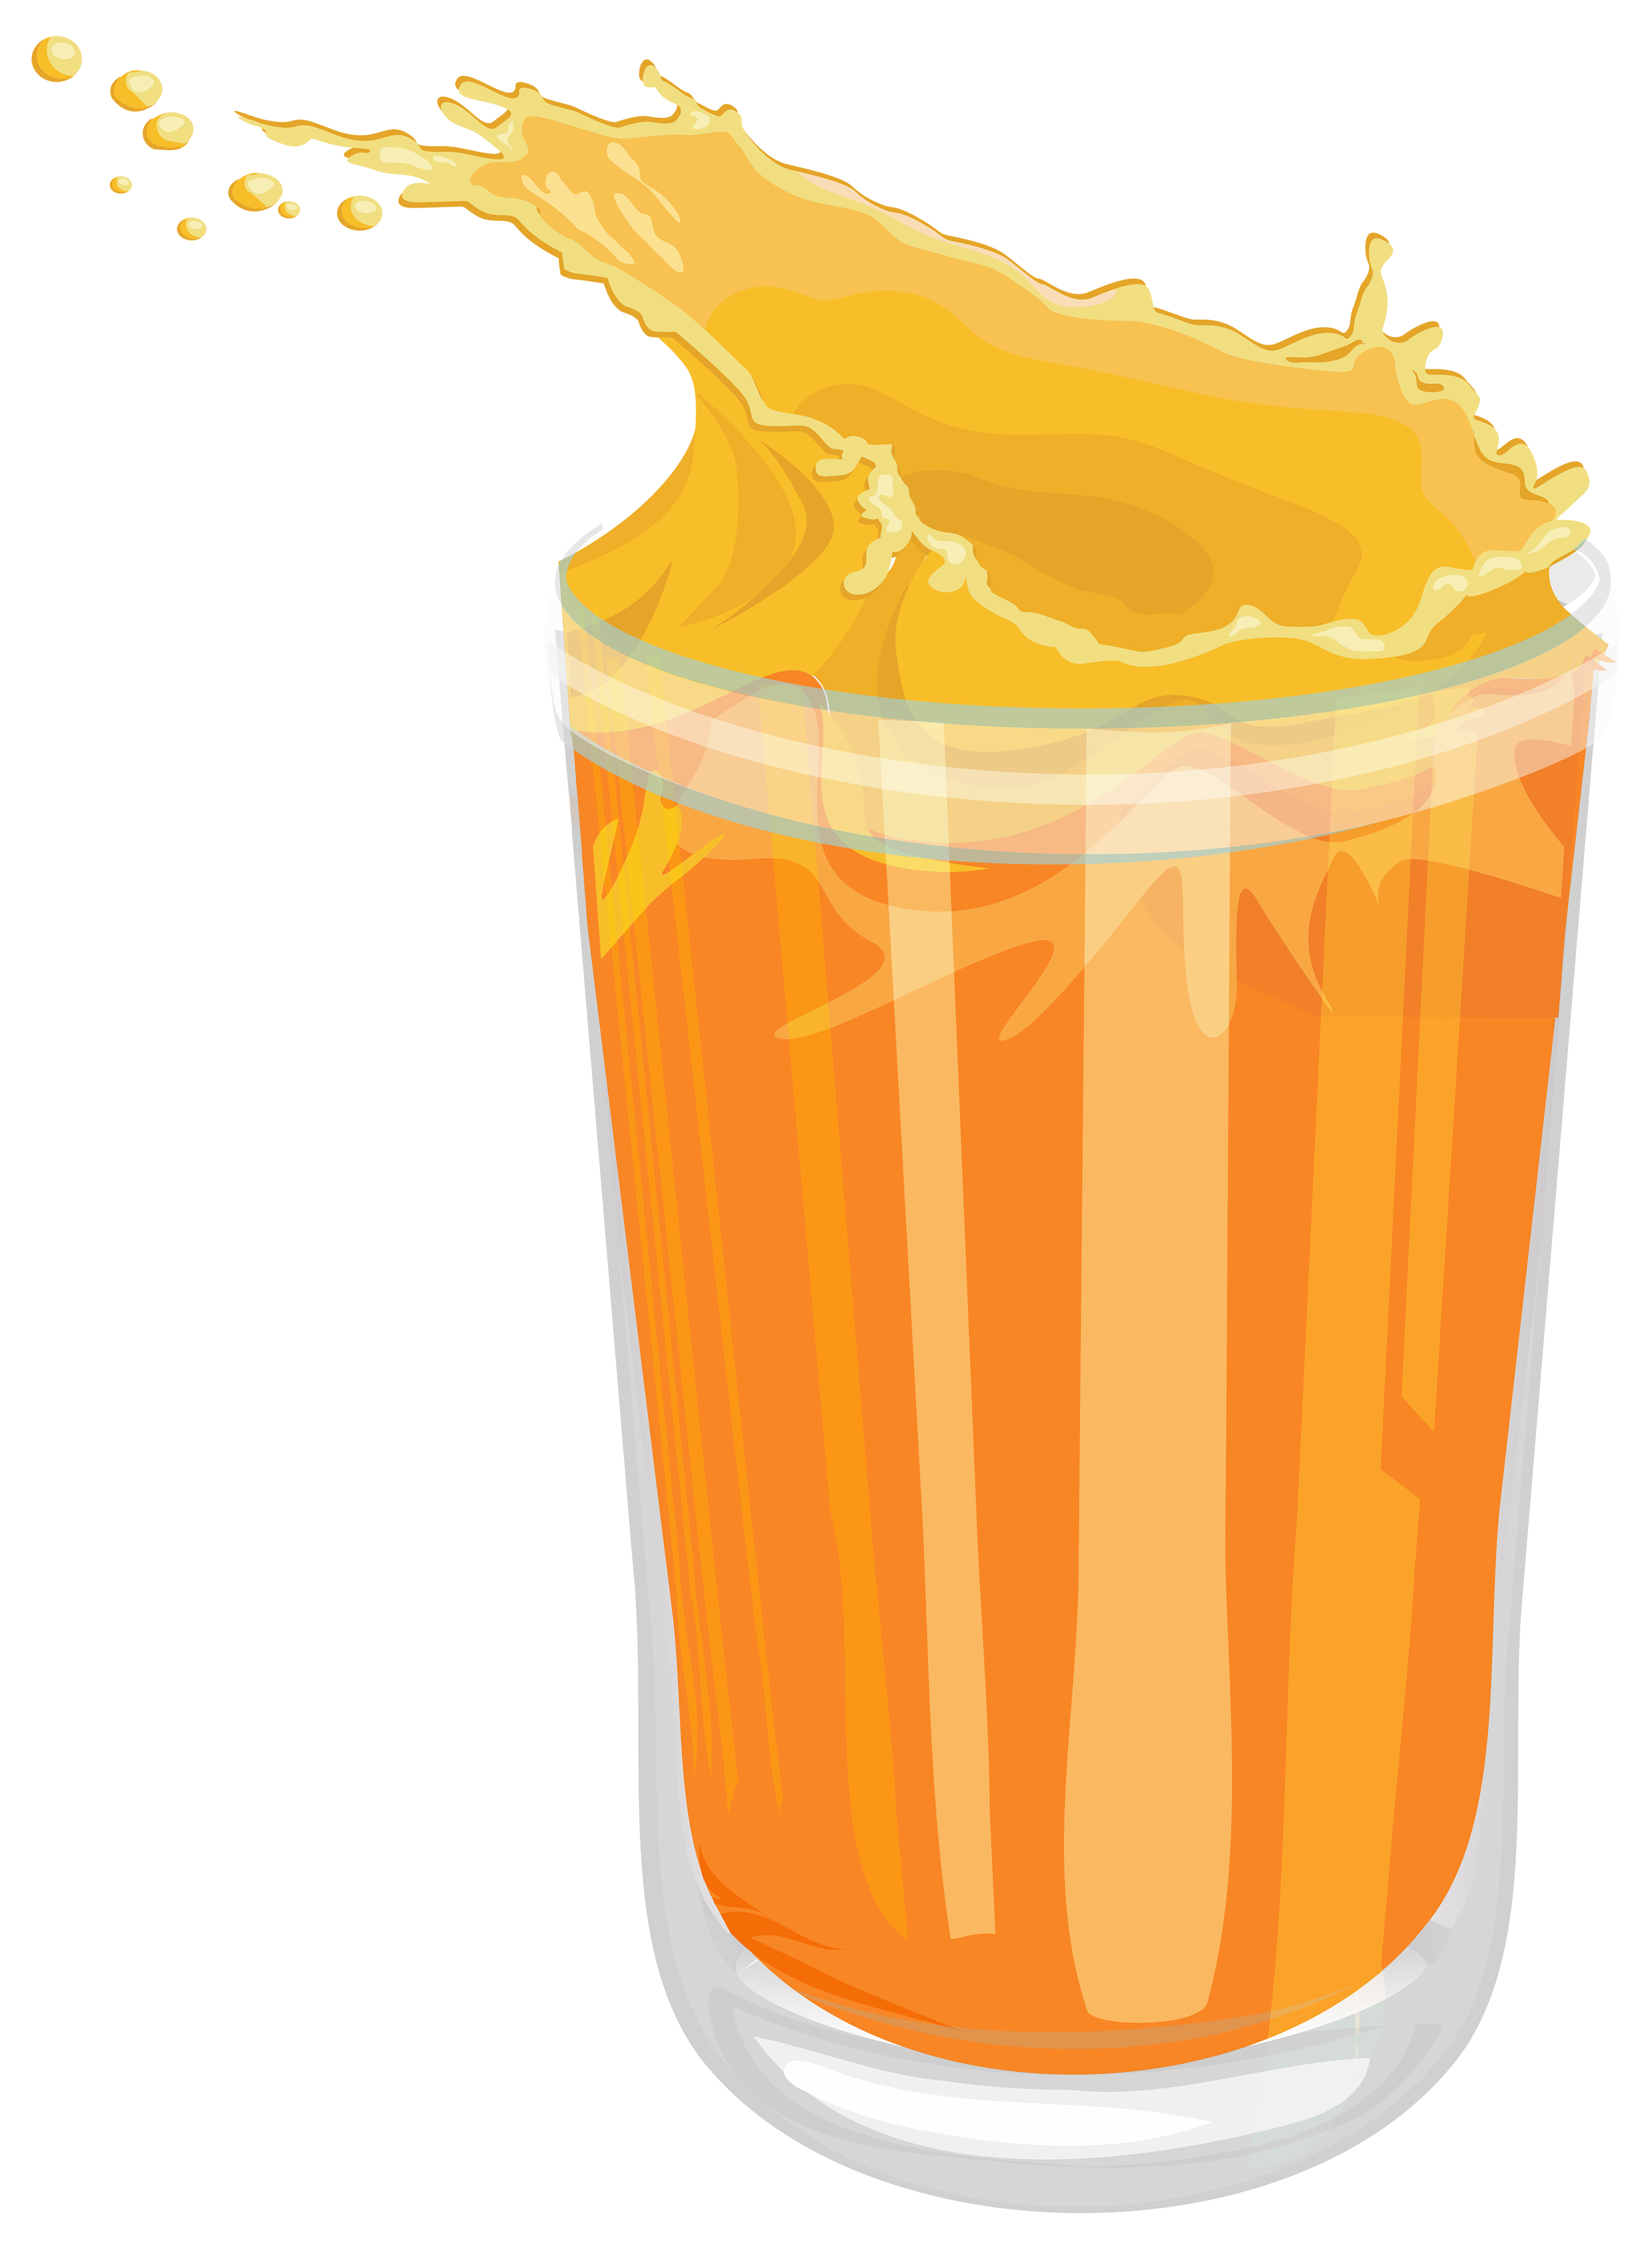 Fresh Orange Juice PNG Clipart - Best WEB Clipart